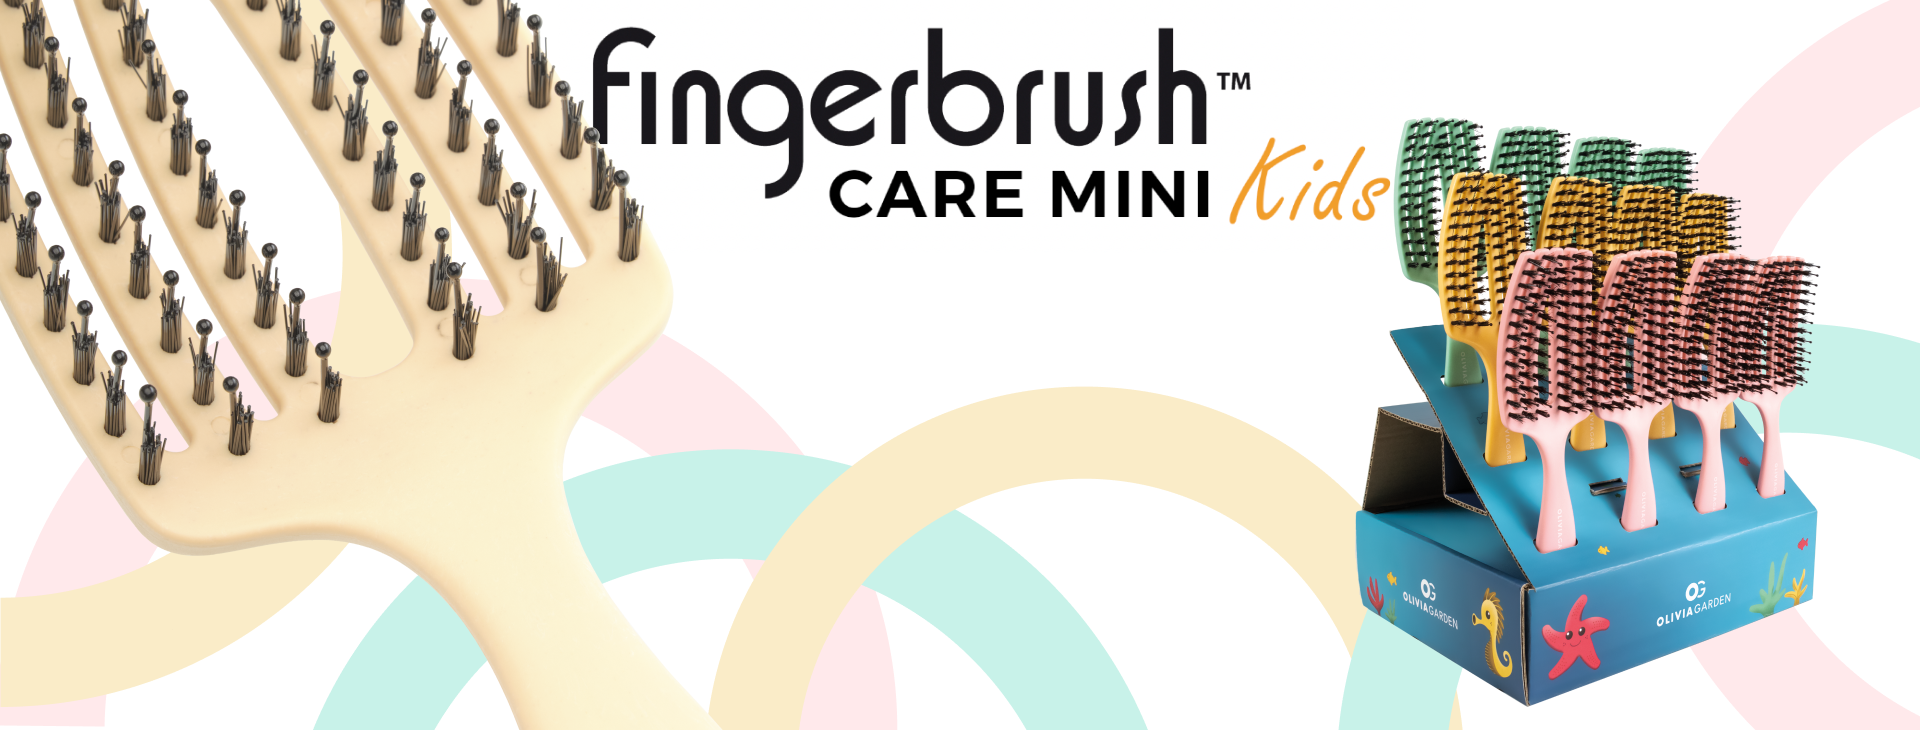 Fingerbrush Care Mini Kids